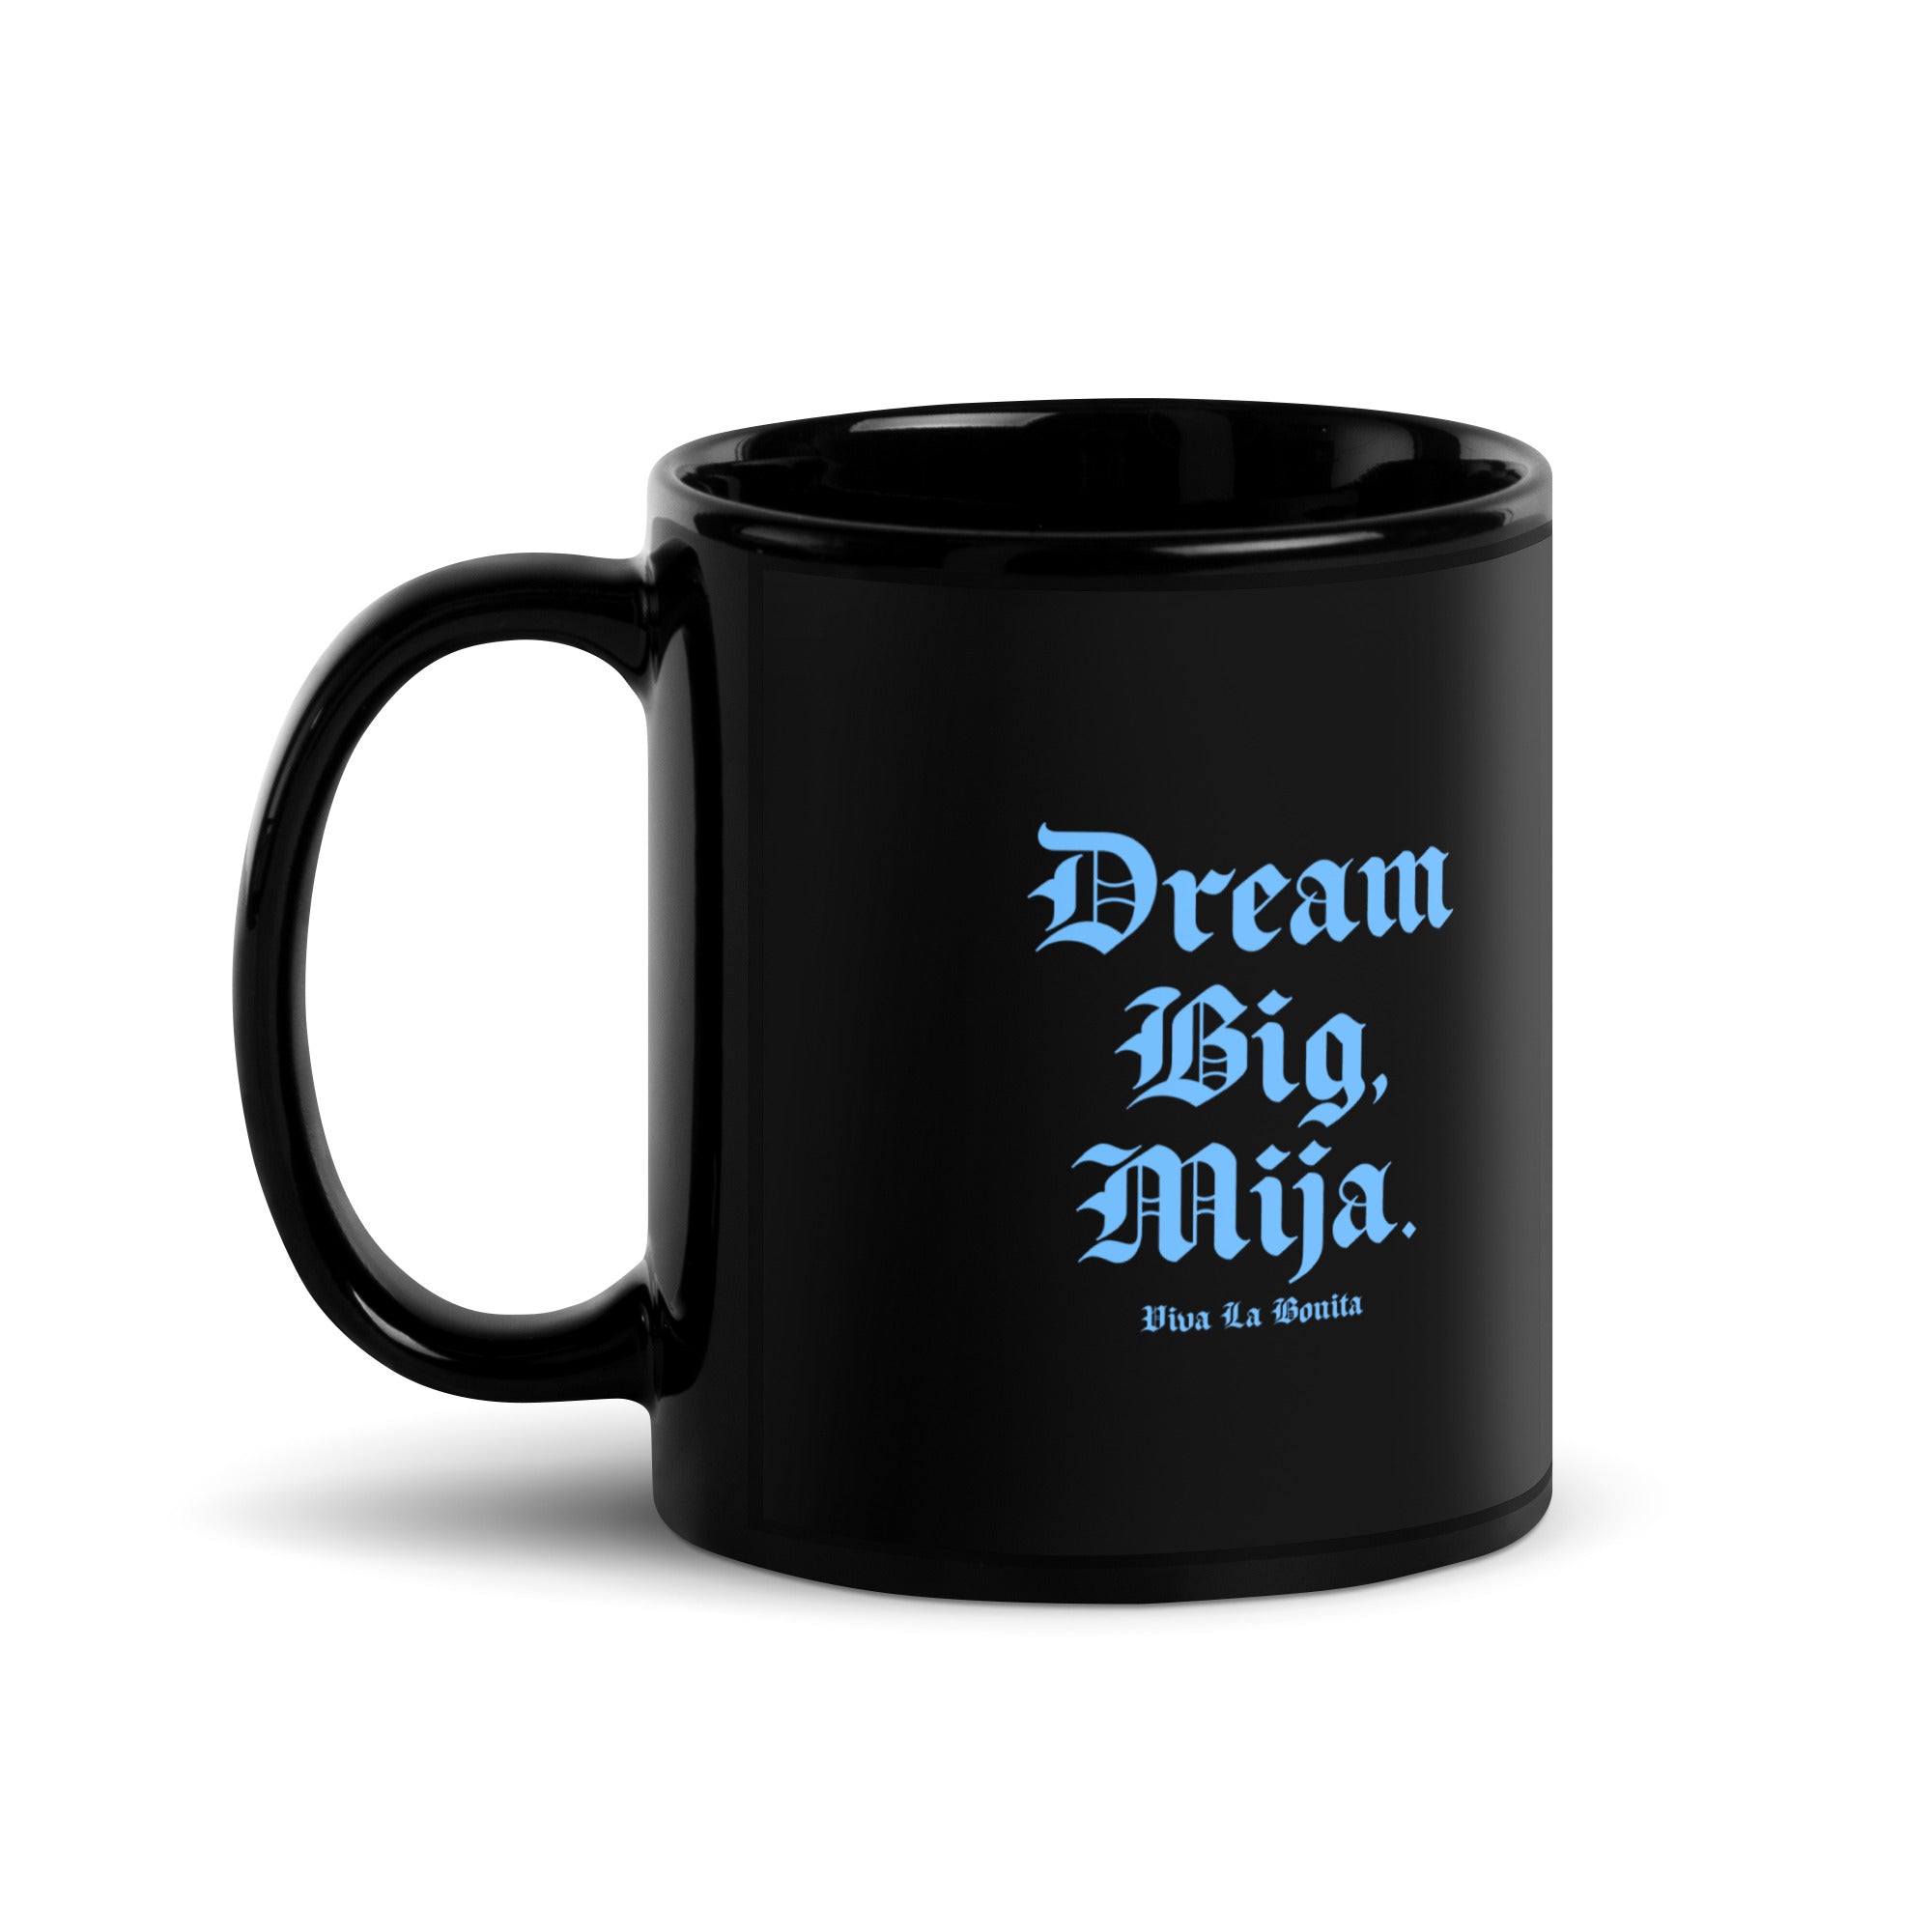 Dream Big Mija Black Glossy Mug